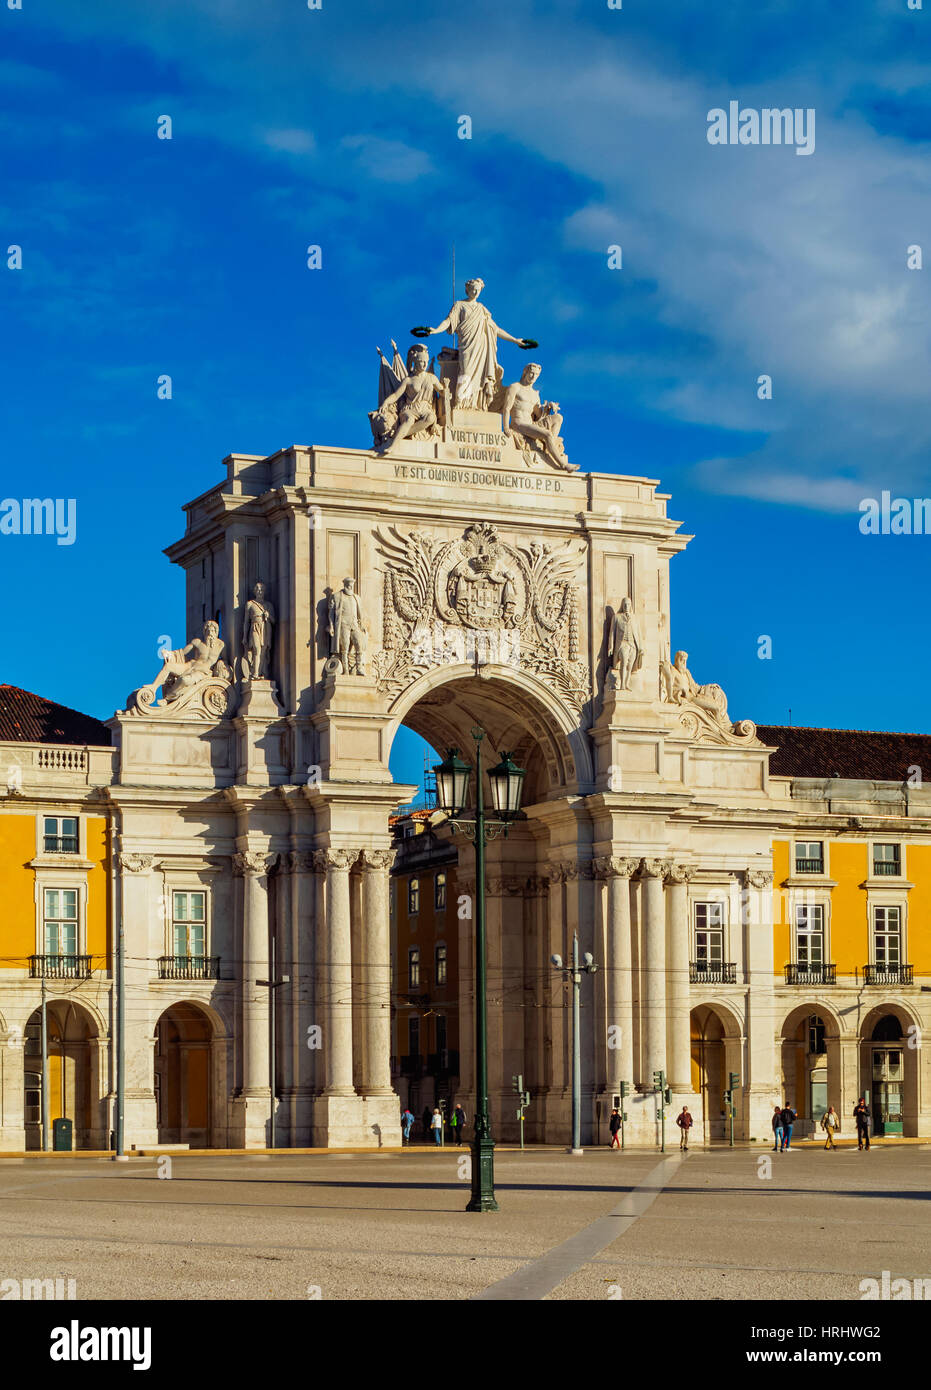 View of the Rua Augusta Arch, Praca do Comercio (Commerce Square), Lisbon, Portugal Stock Photo